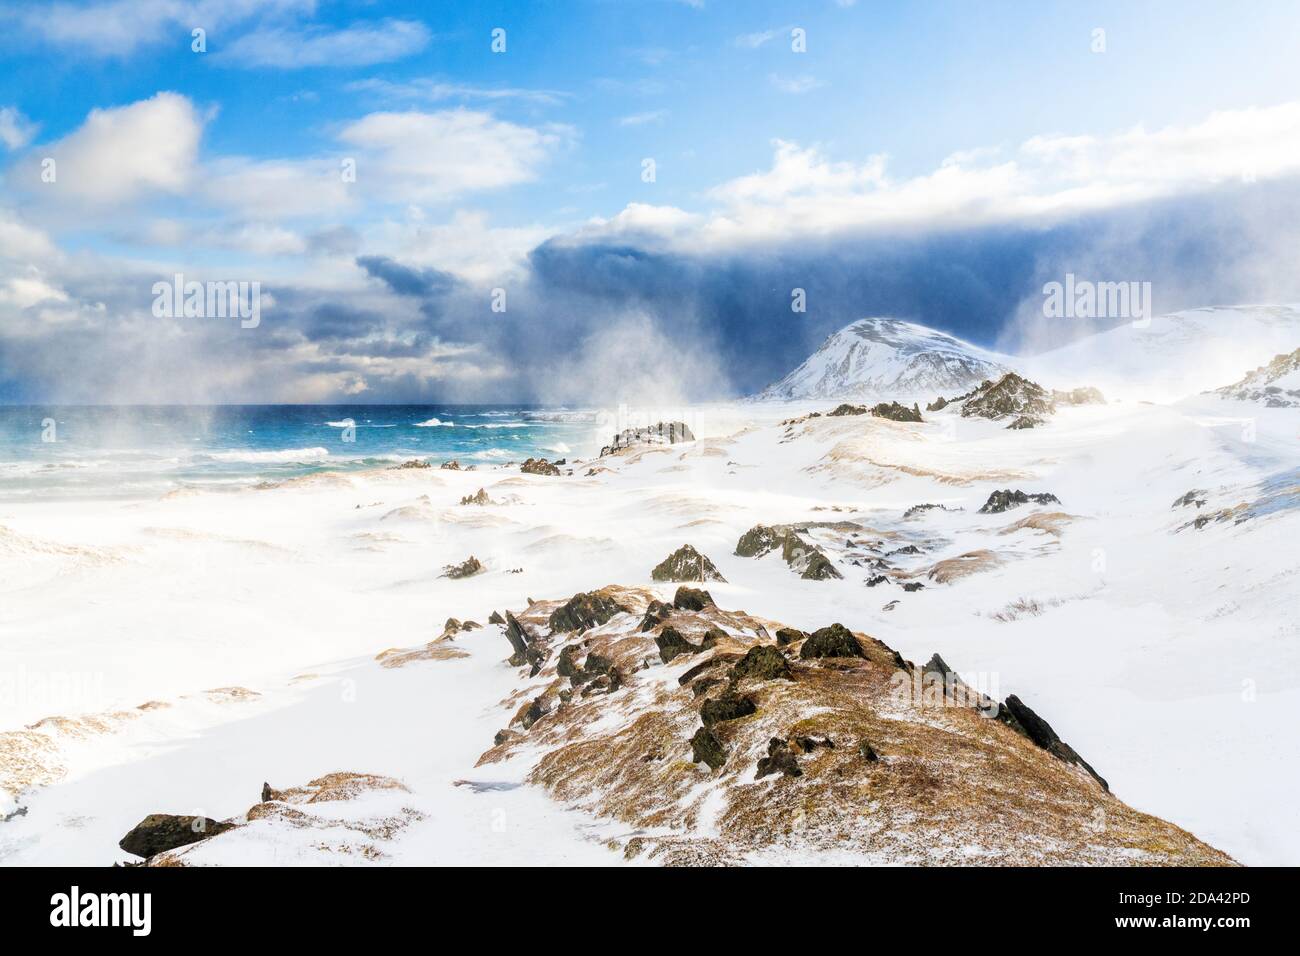 Vagues de mer arctique se brisant sur un paysage enneigé pendant un blizzard, Sandfjorden, Berlevag, Varanger Peninsula, Finnmark, Norvège Banque D'Images